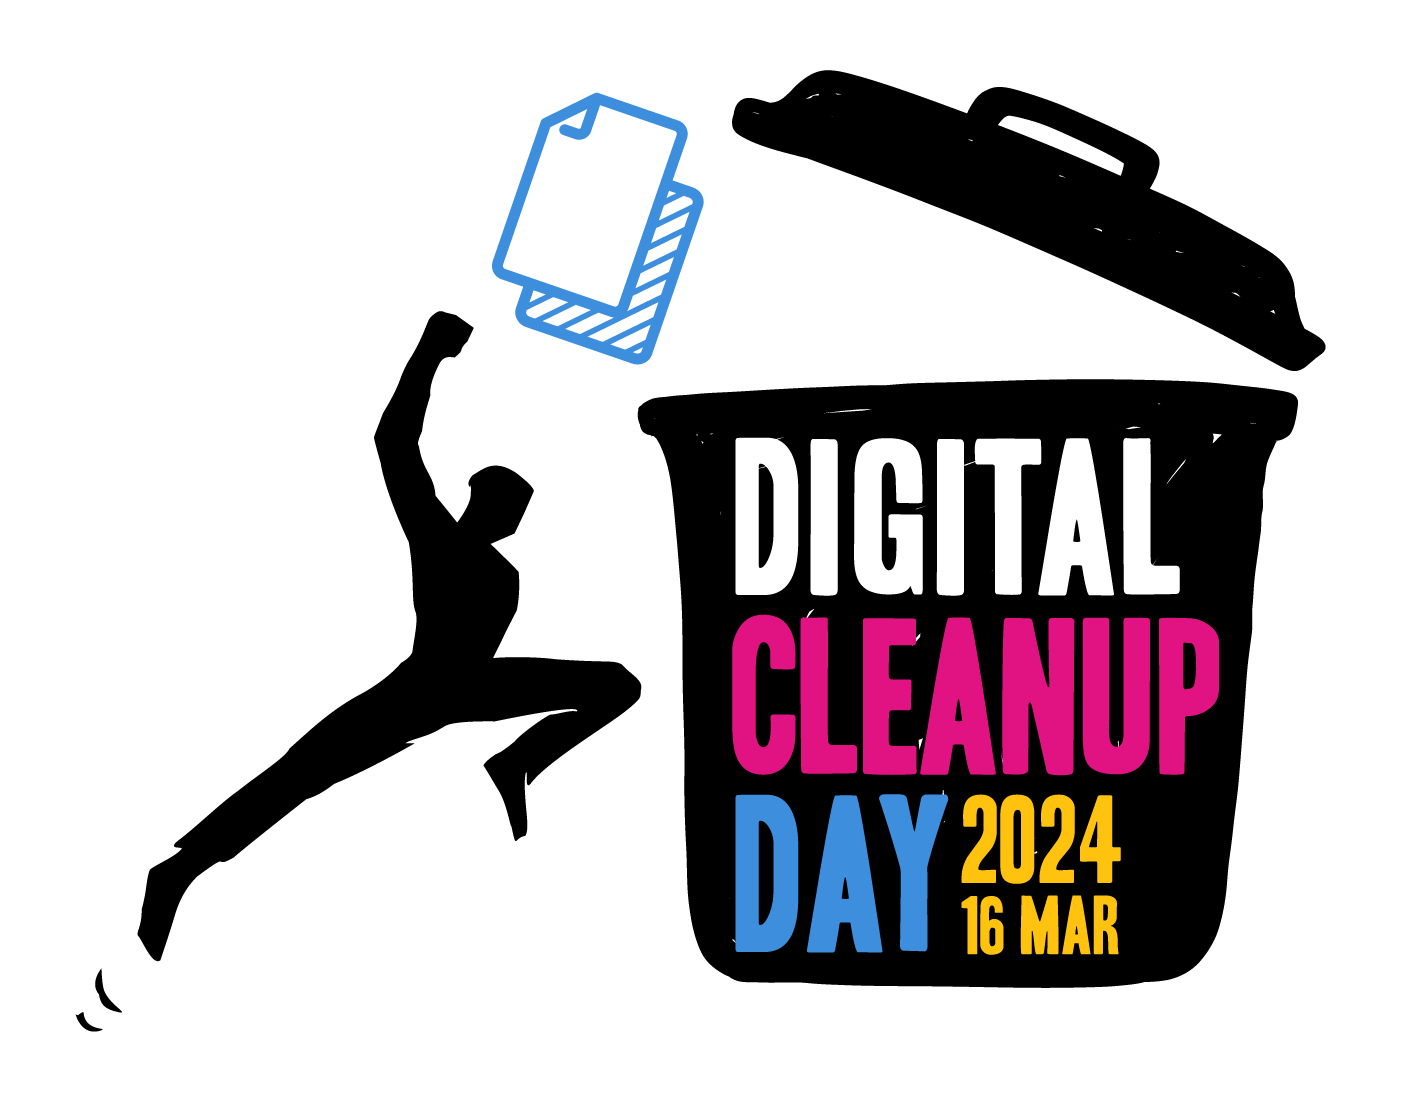 Logo du digital cleanup day du 16 mars 2024. On voit une ombre sauter pour mettre des fichiers dans une poubelle sur laquelle sont inscrits les mots "digital cleanup day 2024 16 MAR"